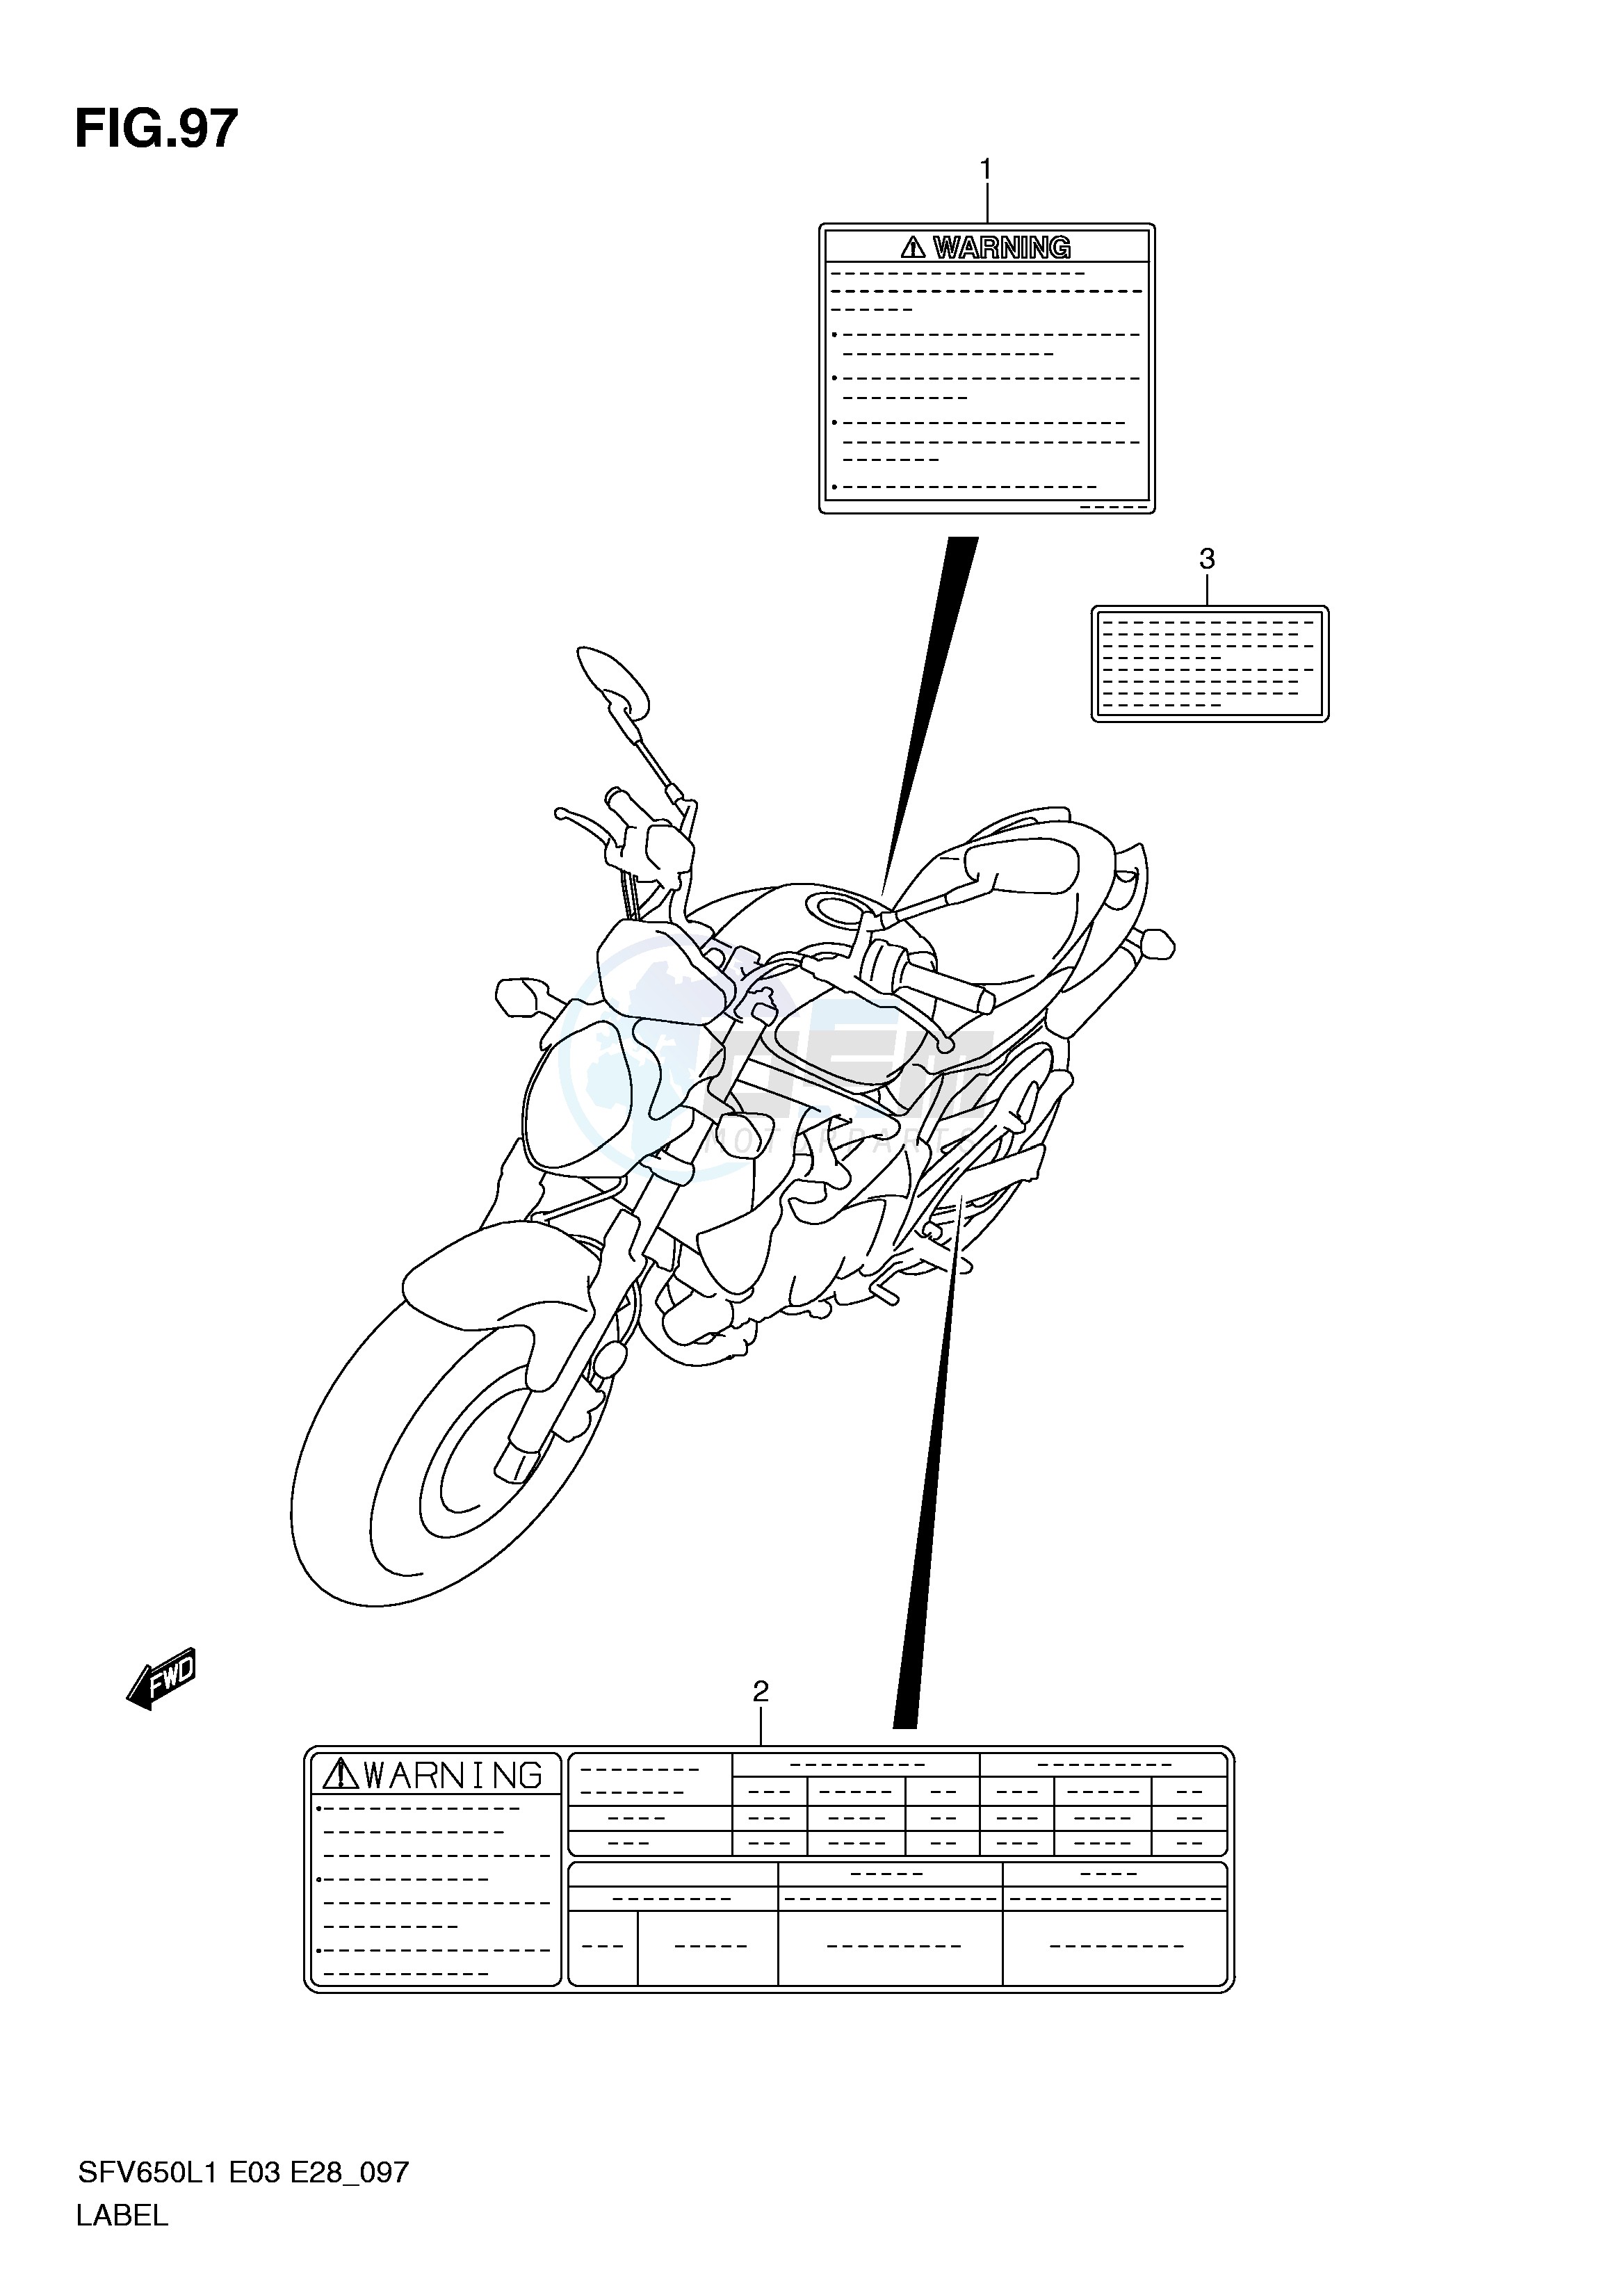 LABEL (SFV650AL1 E33) blueprint